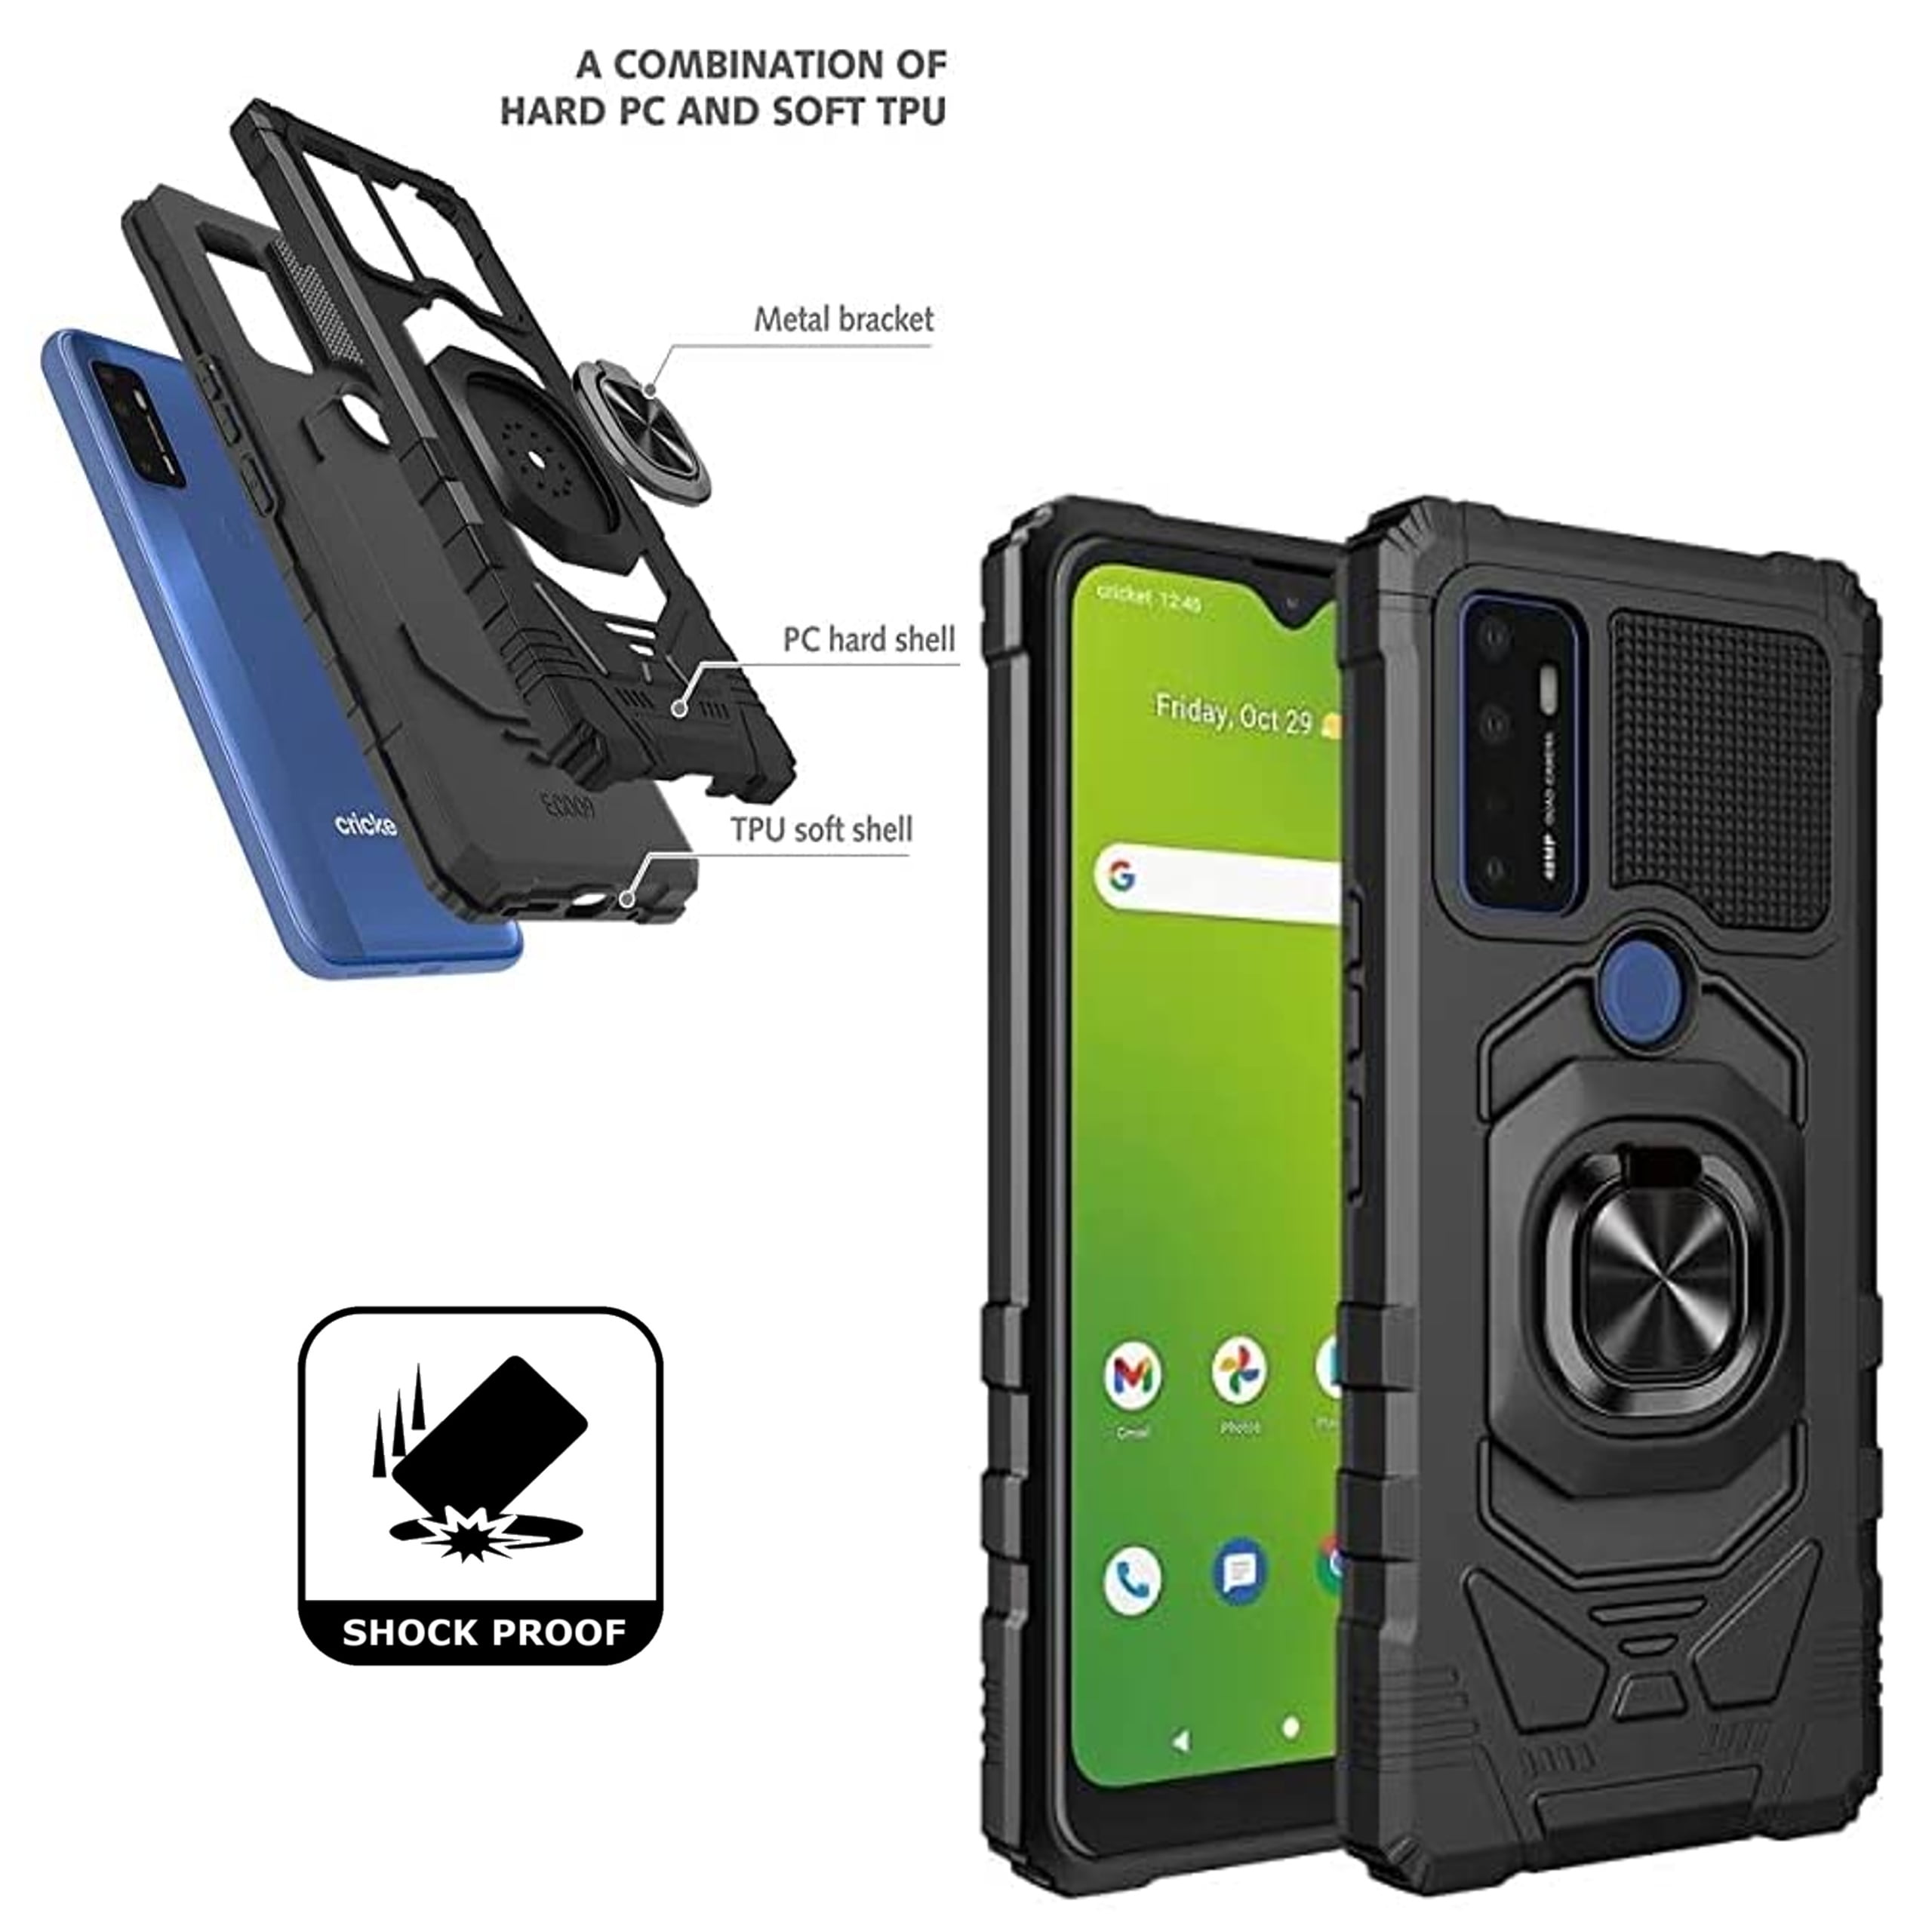 Accessoire pour téléphone mobile SPIGEN Kuel A210 - Plaque en métal pour  téléphone portable - noir (pack de 4)